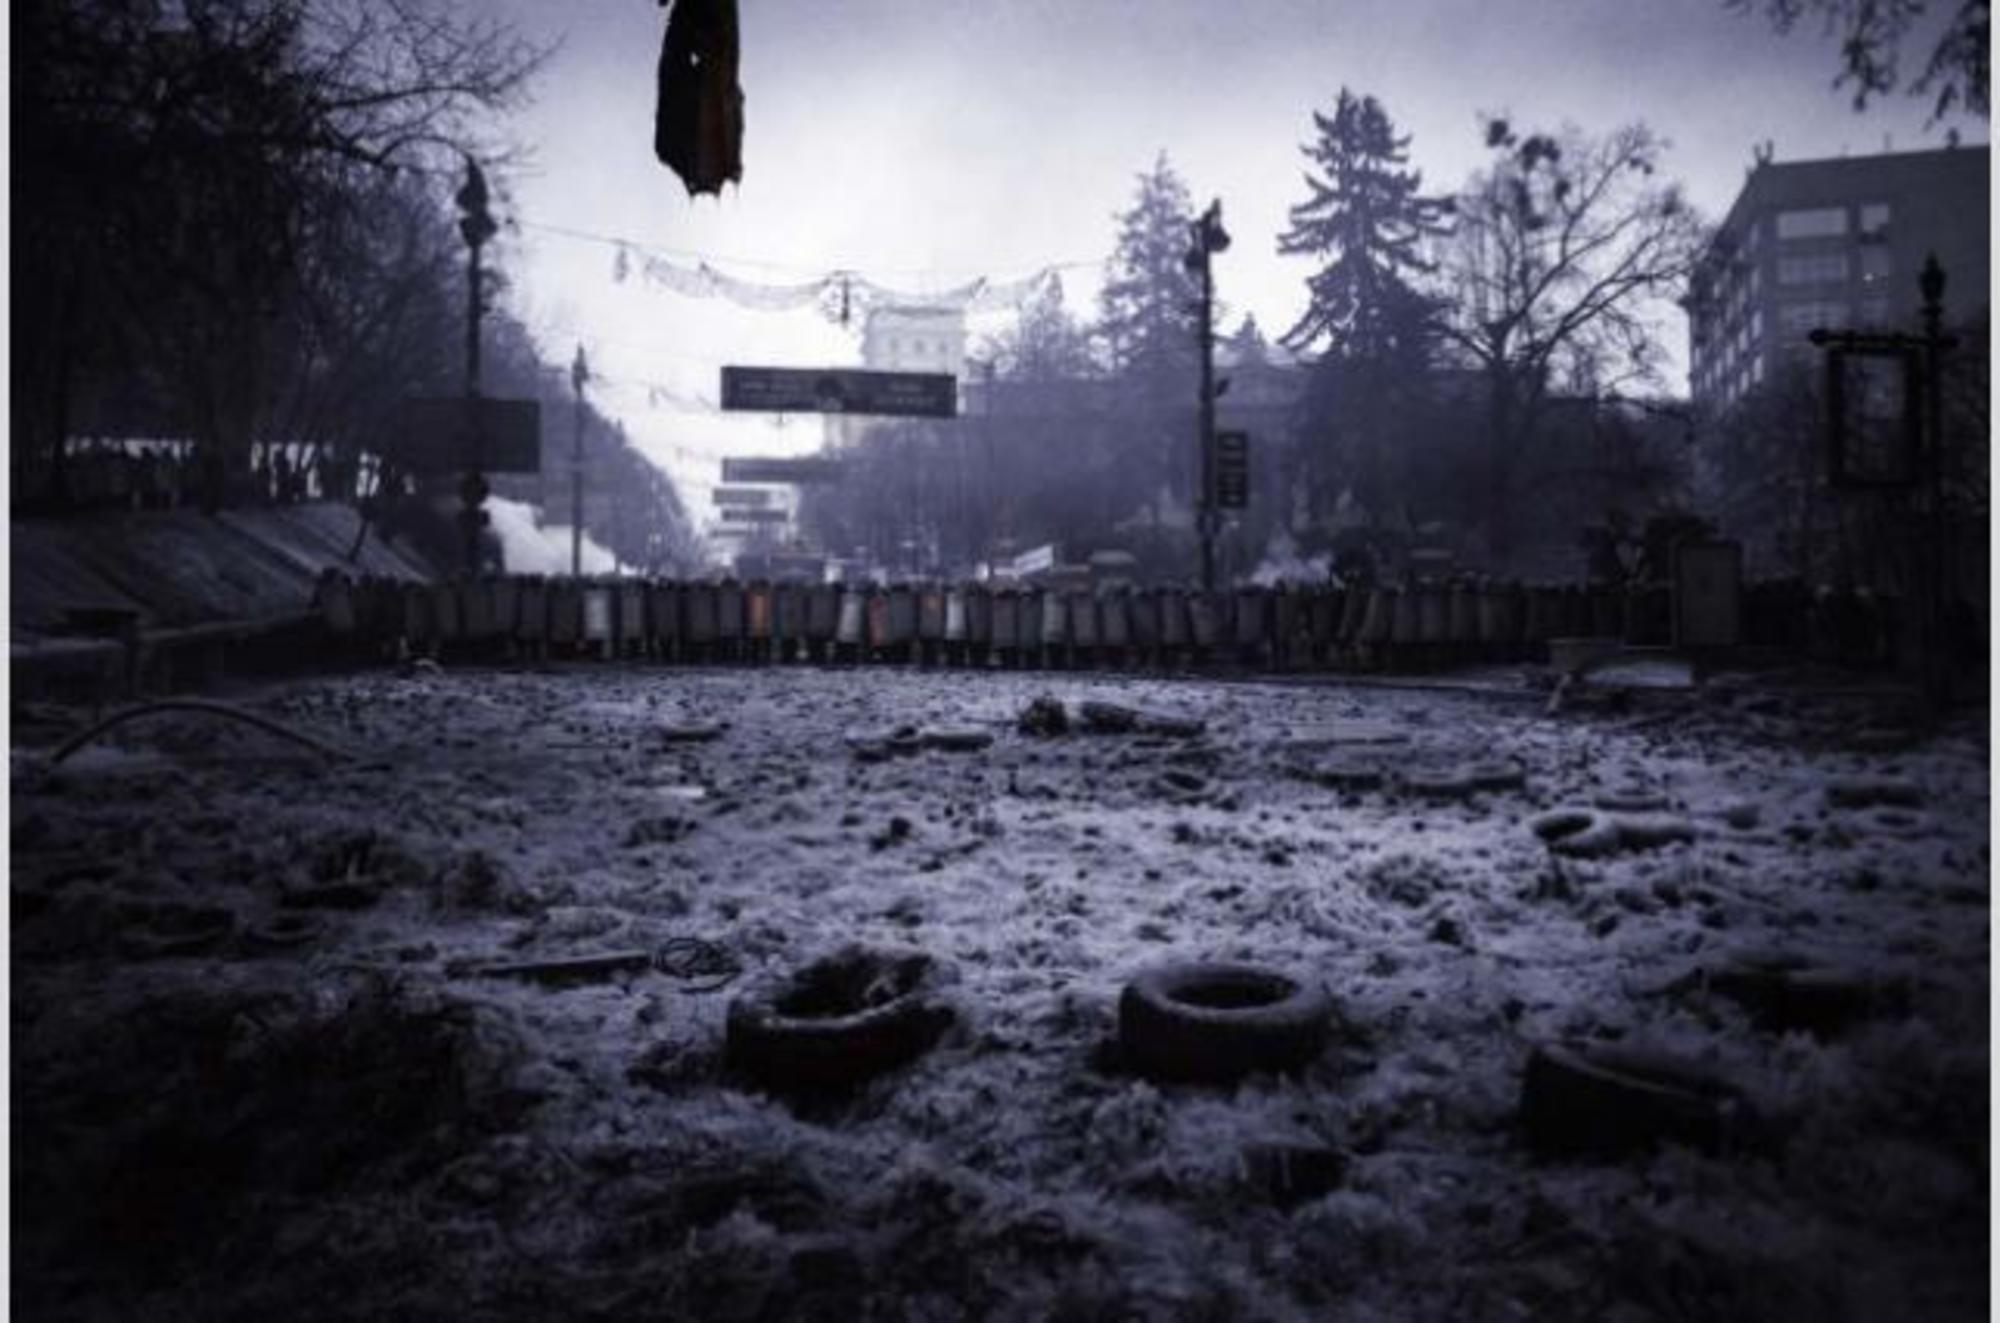 Imágenes de la protesta en Ucrania a principios de febrero.